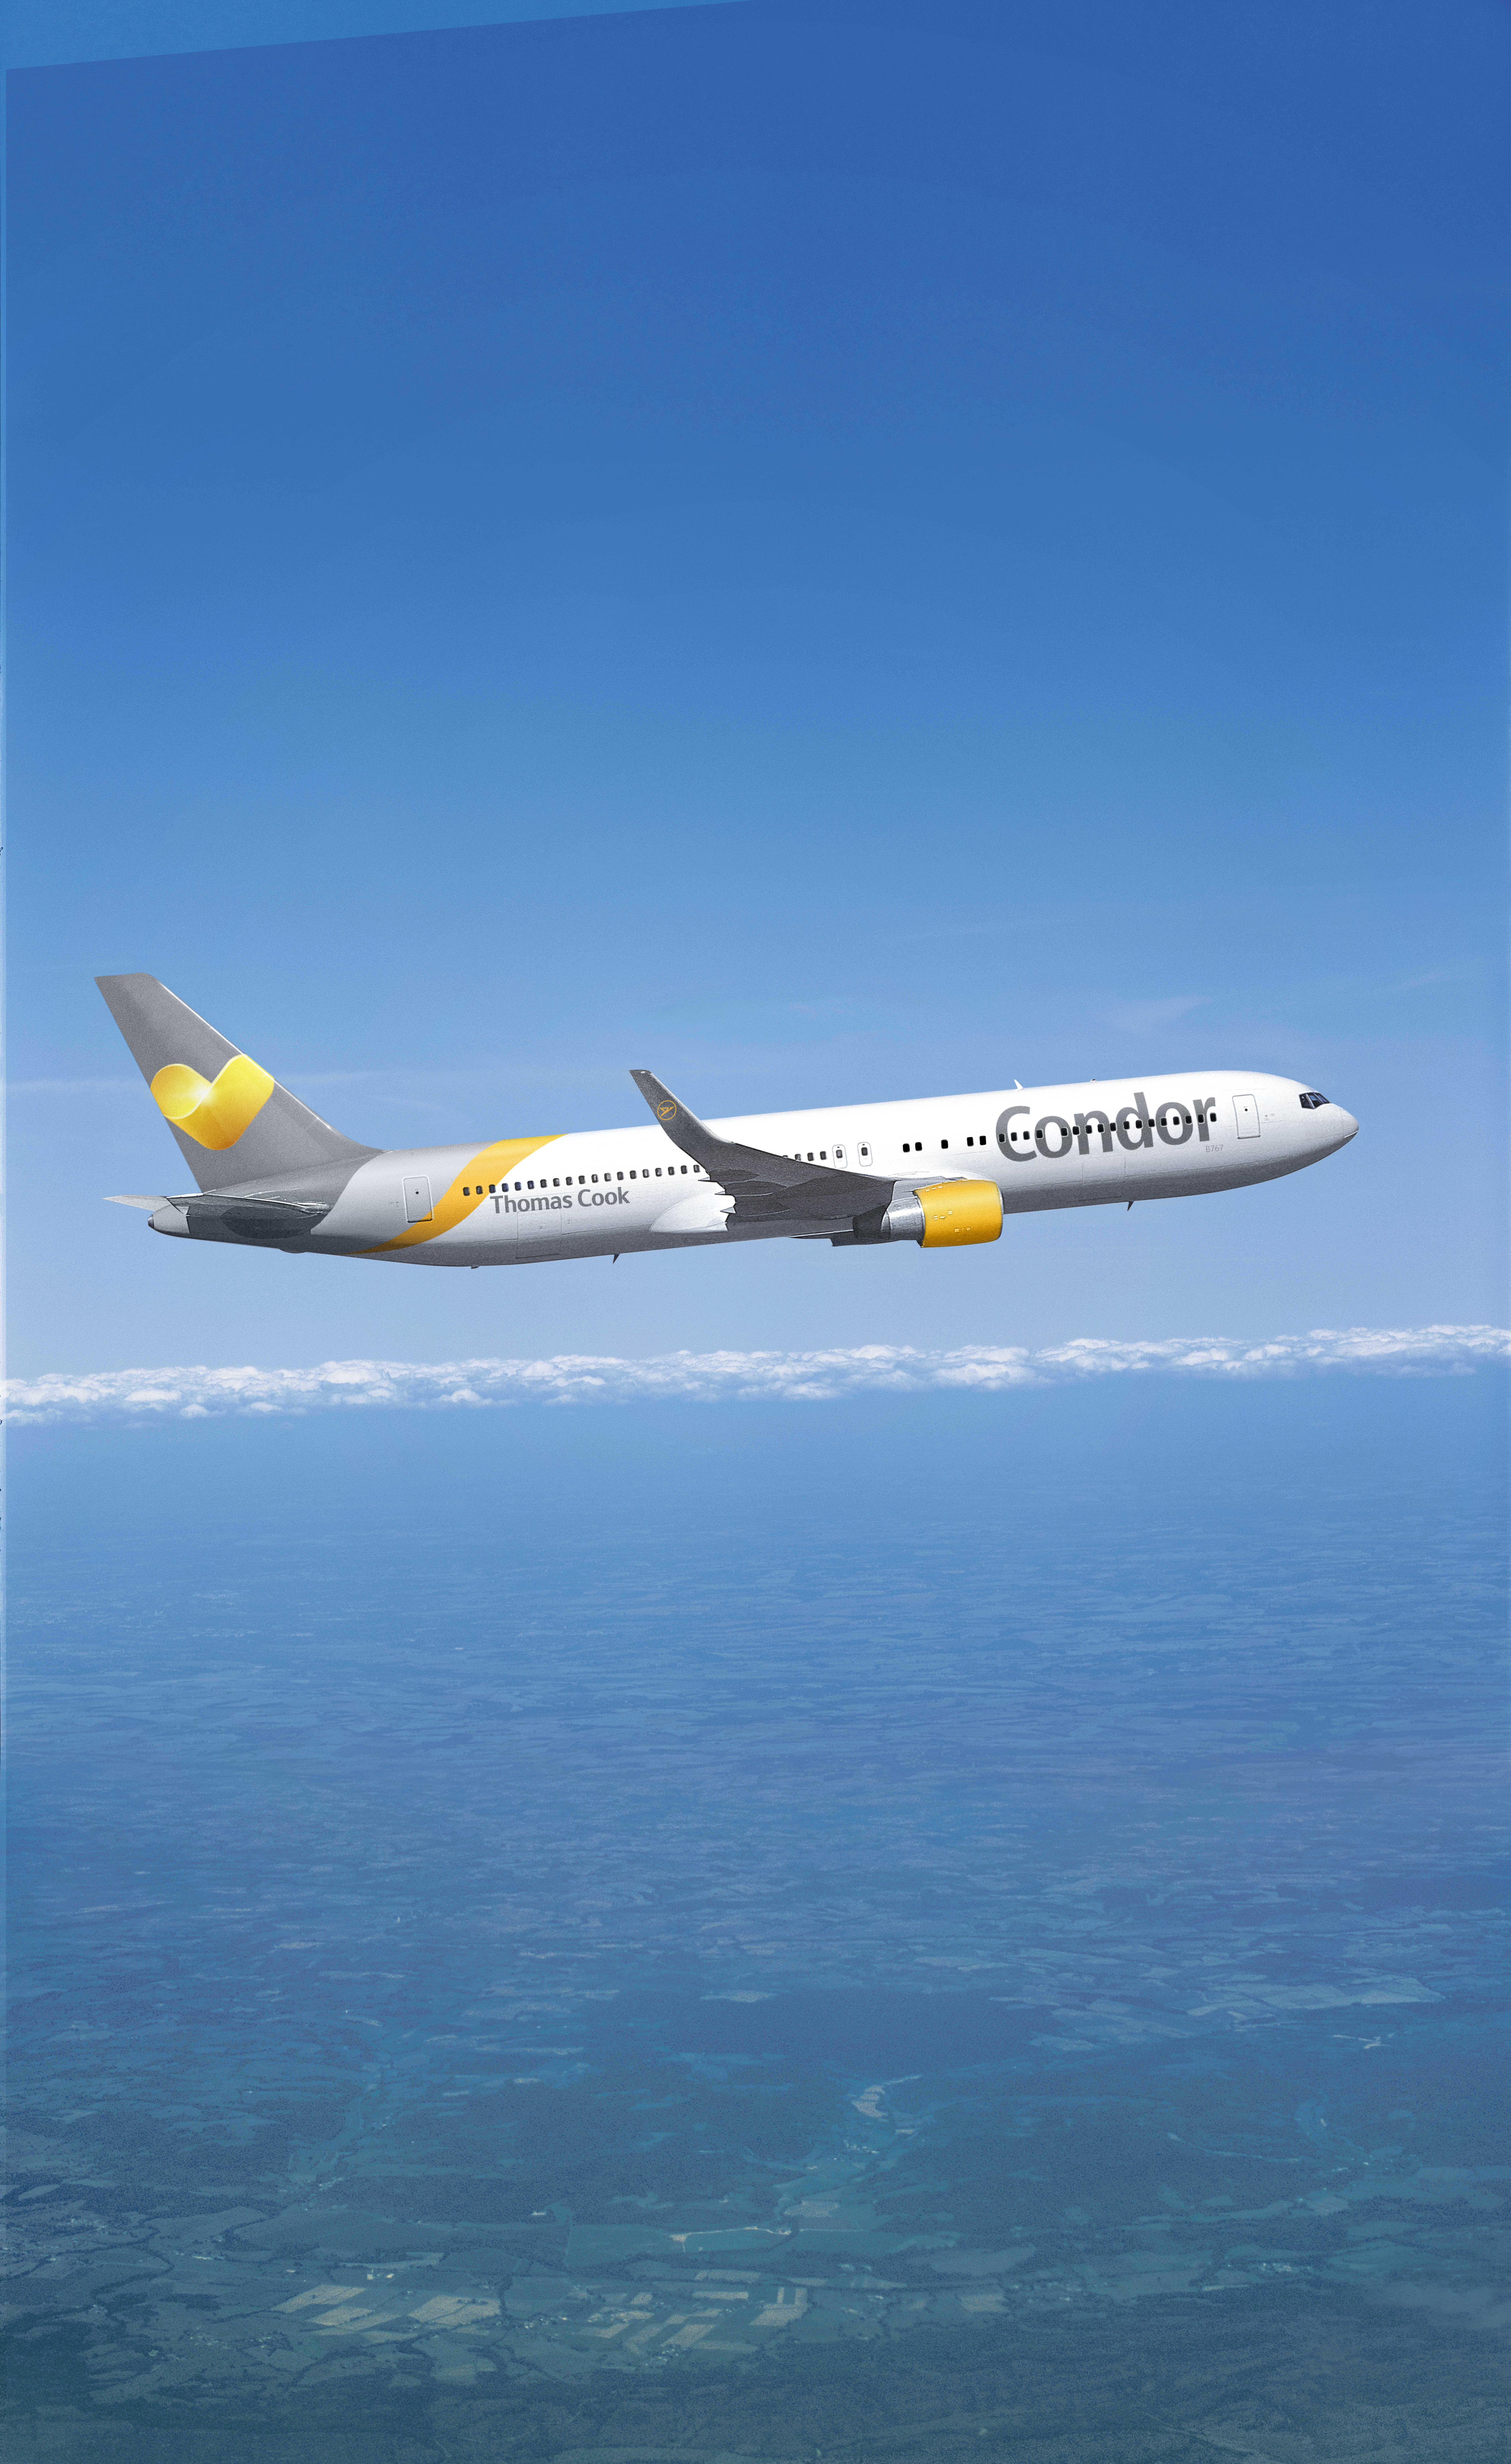 Condor con nuevos vuelos desde Costa Rica a Alemania y República Dominicana